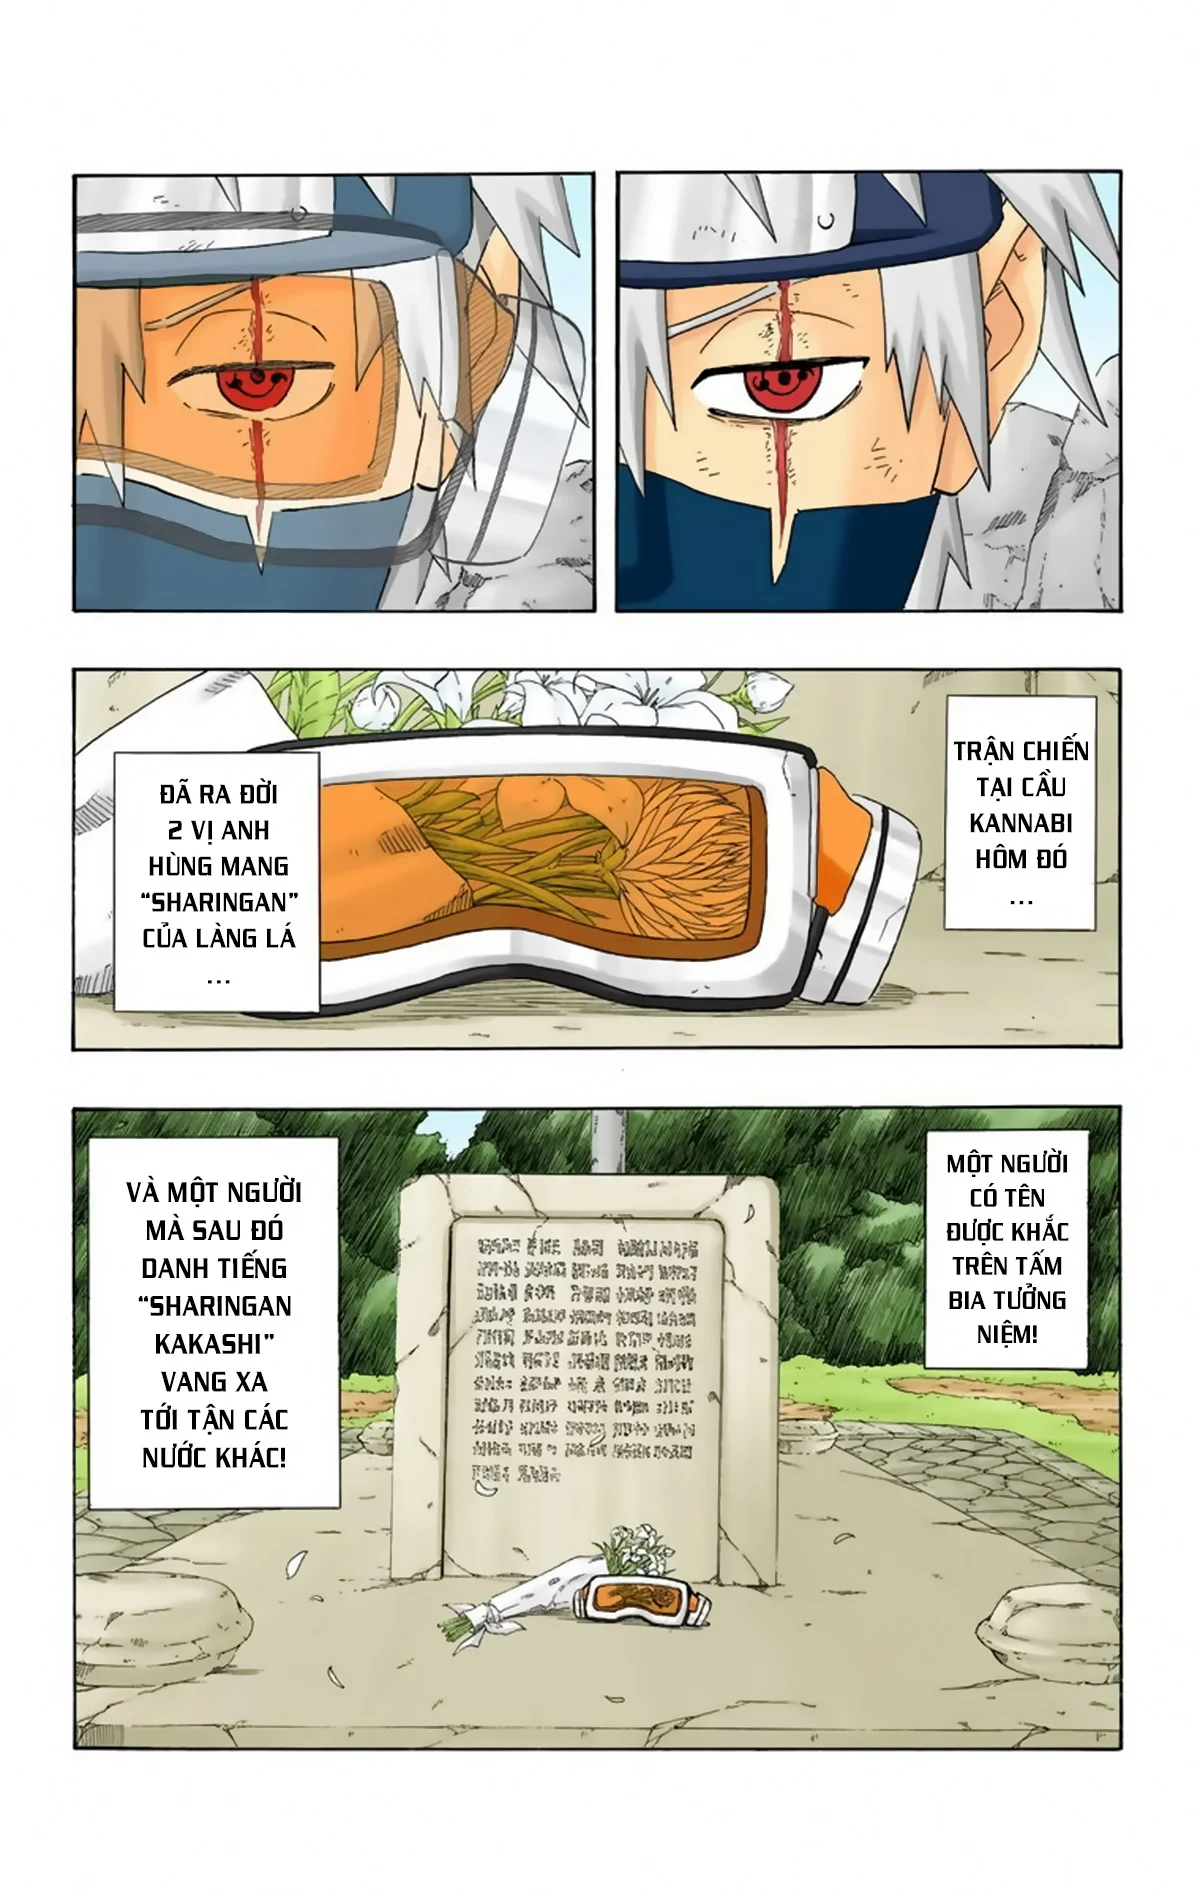 Naruto Full Color Edition Chương 244 Ngo i truy n 5 Anh h ng Sharingan Trang 19